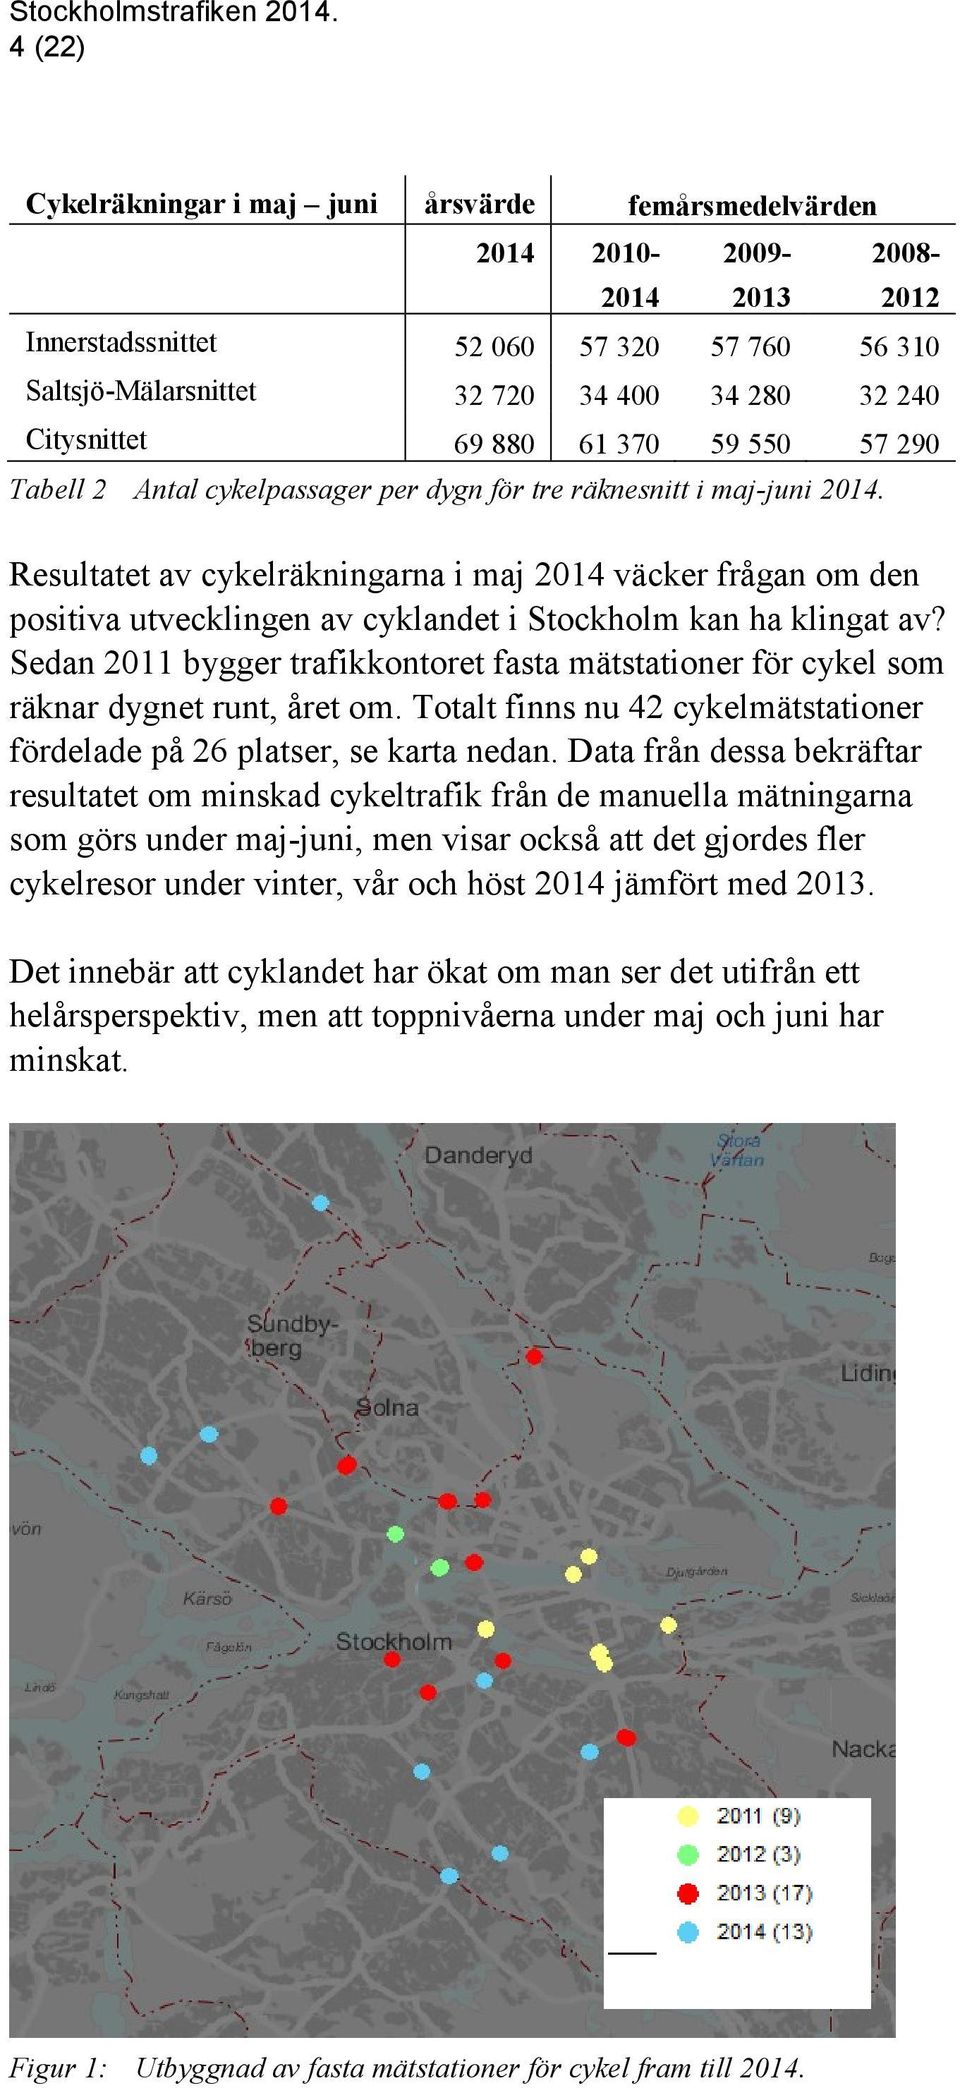 Resultatet av cykelräkningarna i maj 2014 väcker frågan om den positiva utvecklingen av cyklandet i Stockholm kan ha klingat av?